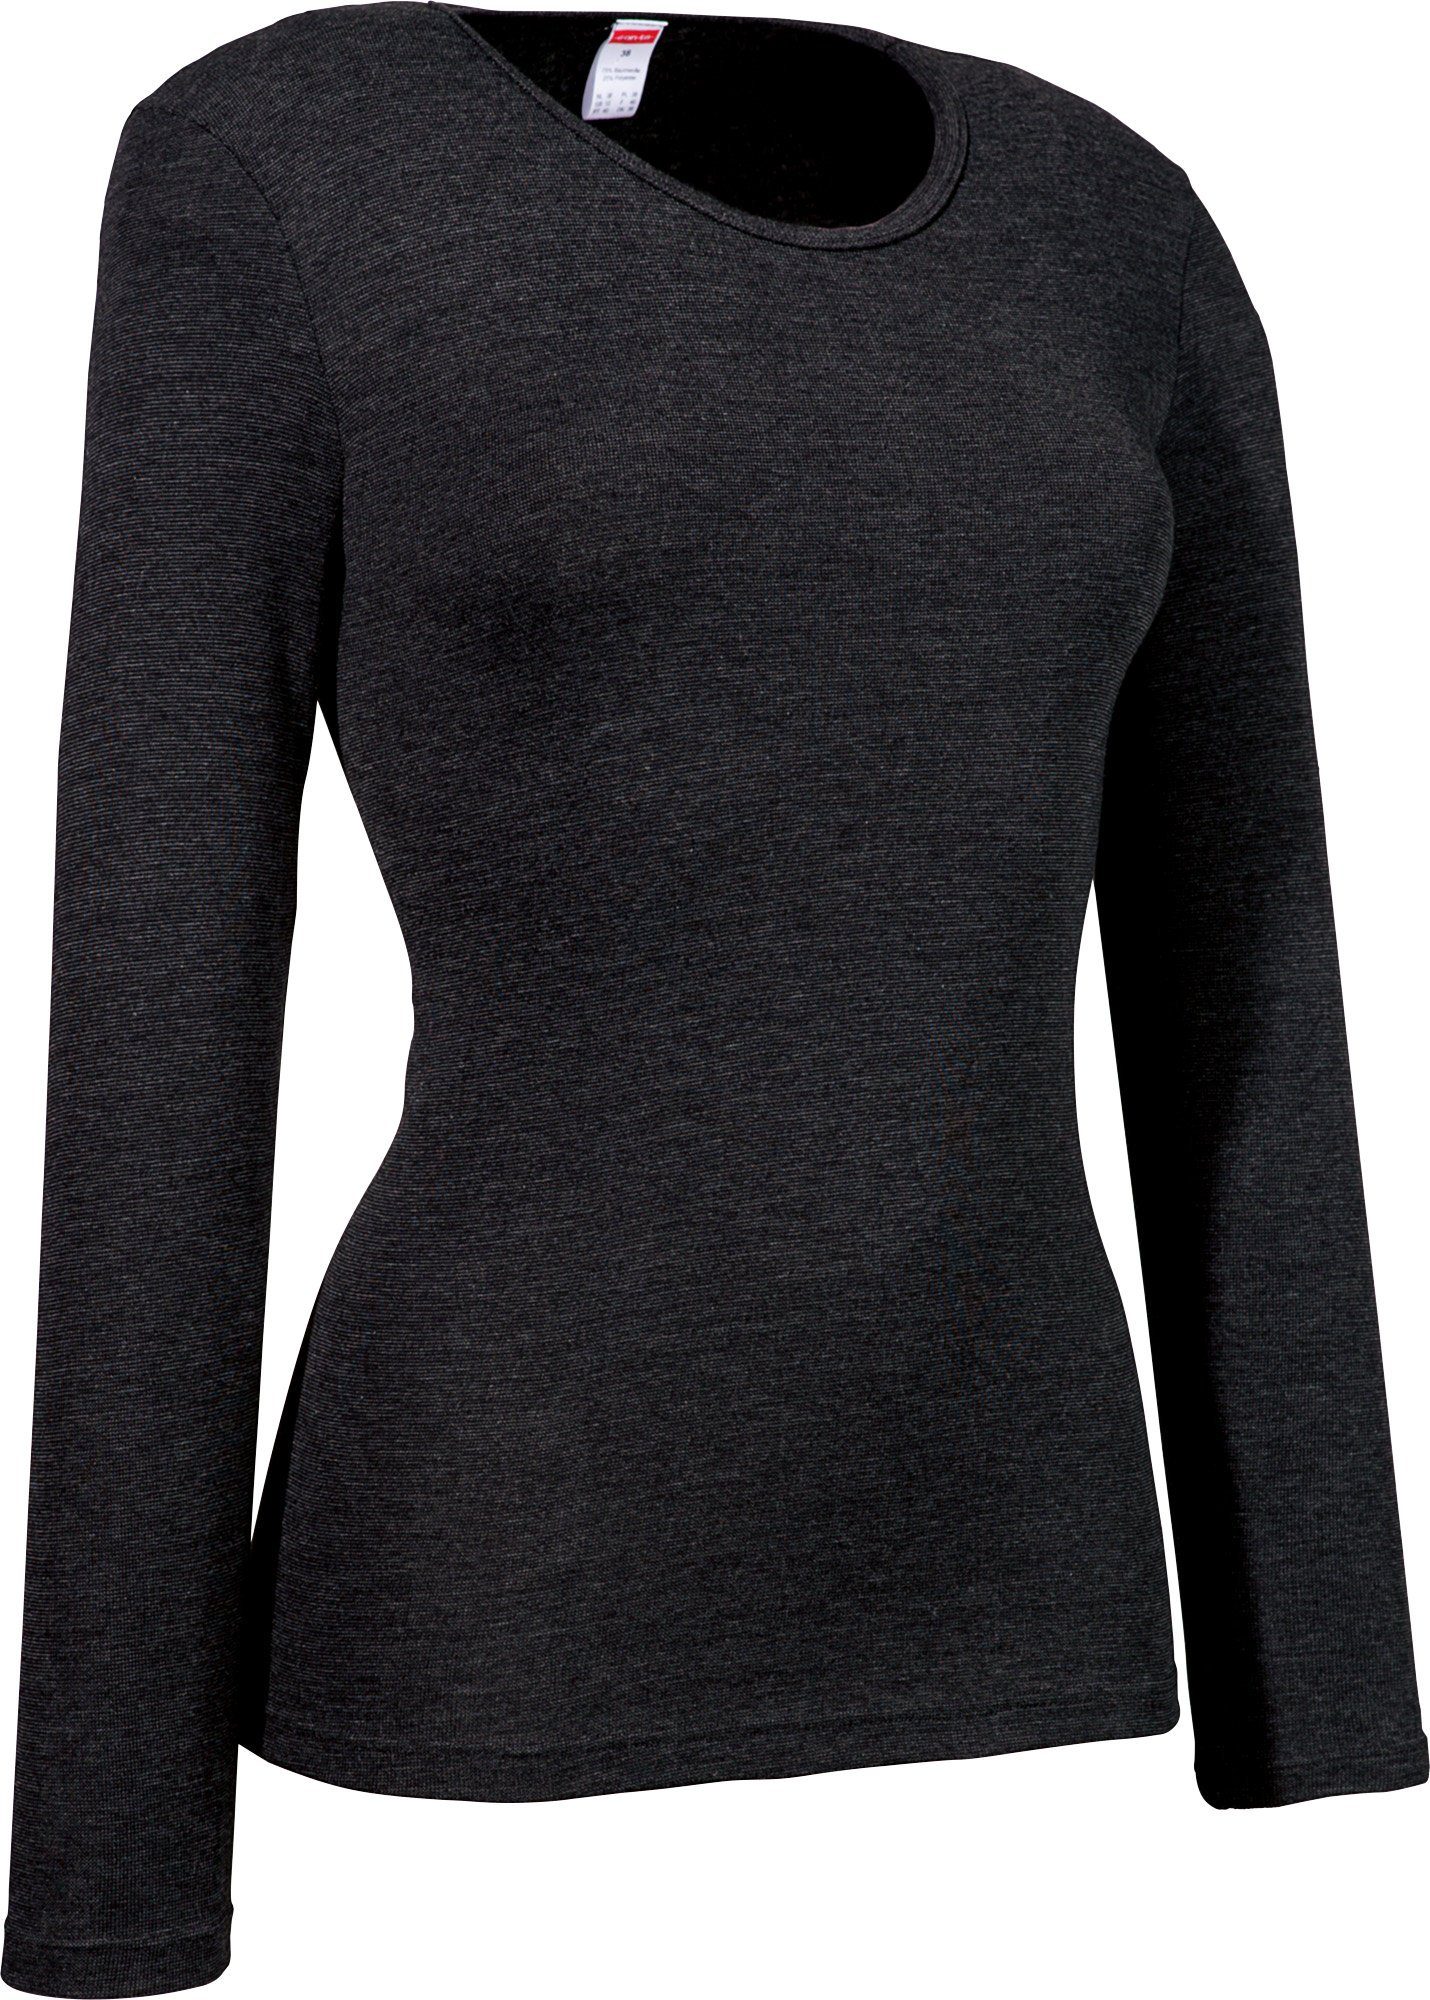 conta Unterhemd Damen-Thermo-Unterhemd, langarm Feinripp Streifen schwarz